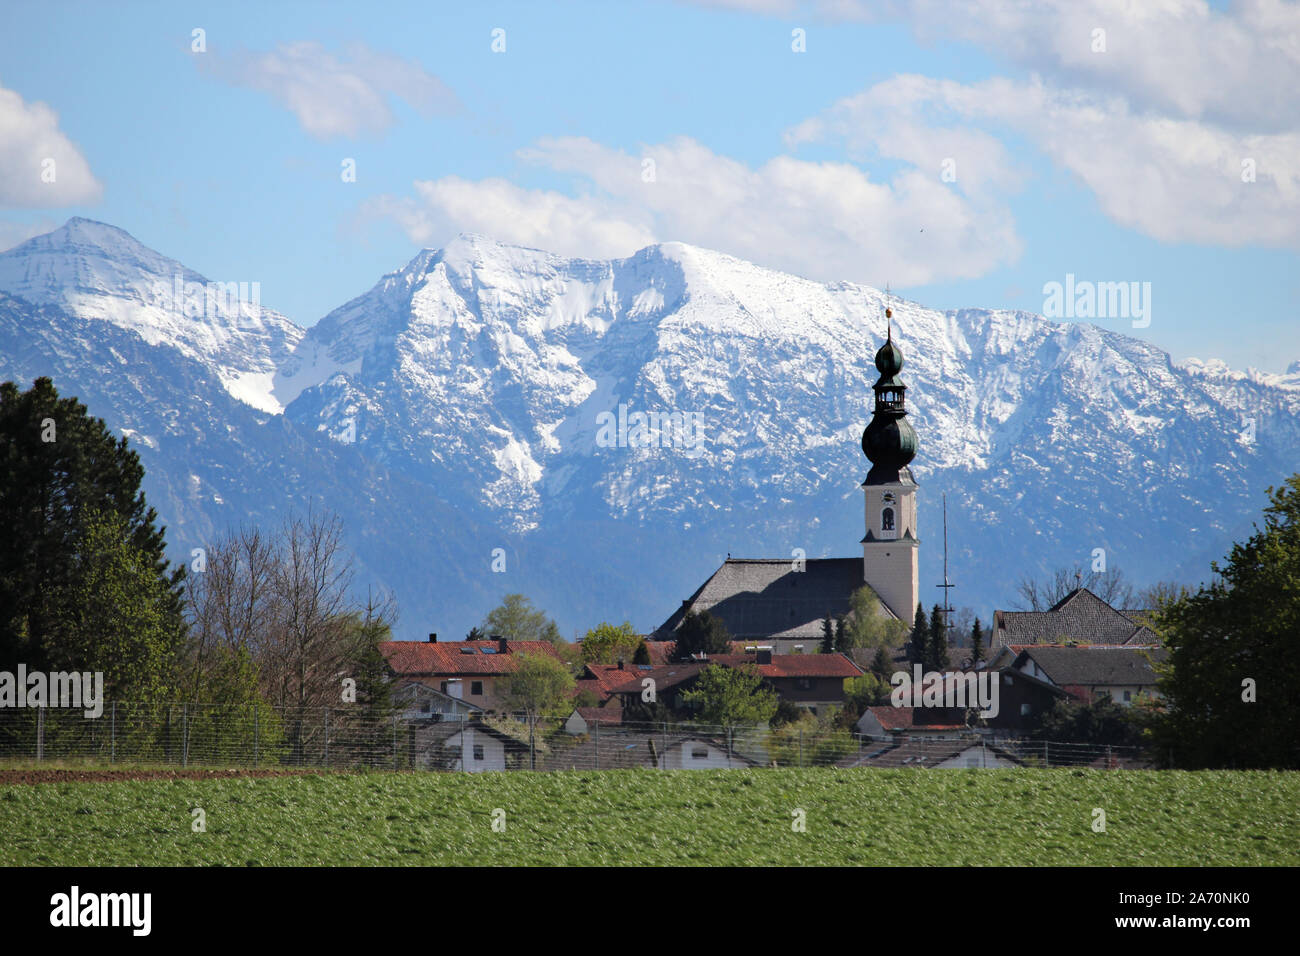 Die Pfarrkirche von Traunwalchen scheint in diesem Telefoto ganz nah Vor den Schneewänden der Chiemgauer Berge * Traunwalchen nella parte anteriore delle Alpi Foto Stock